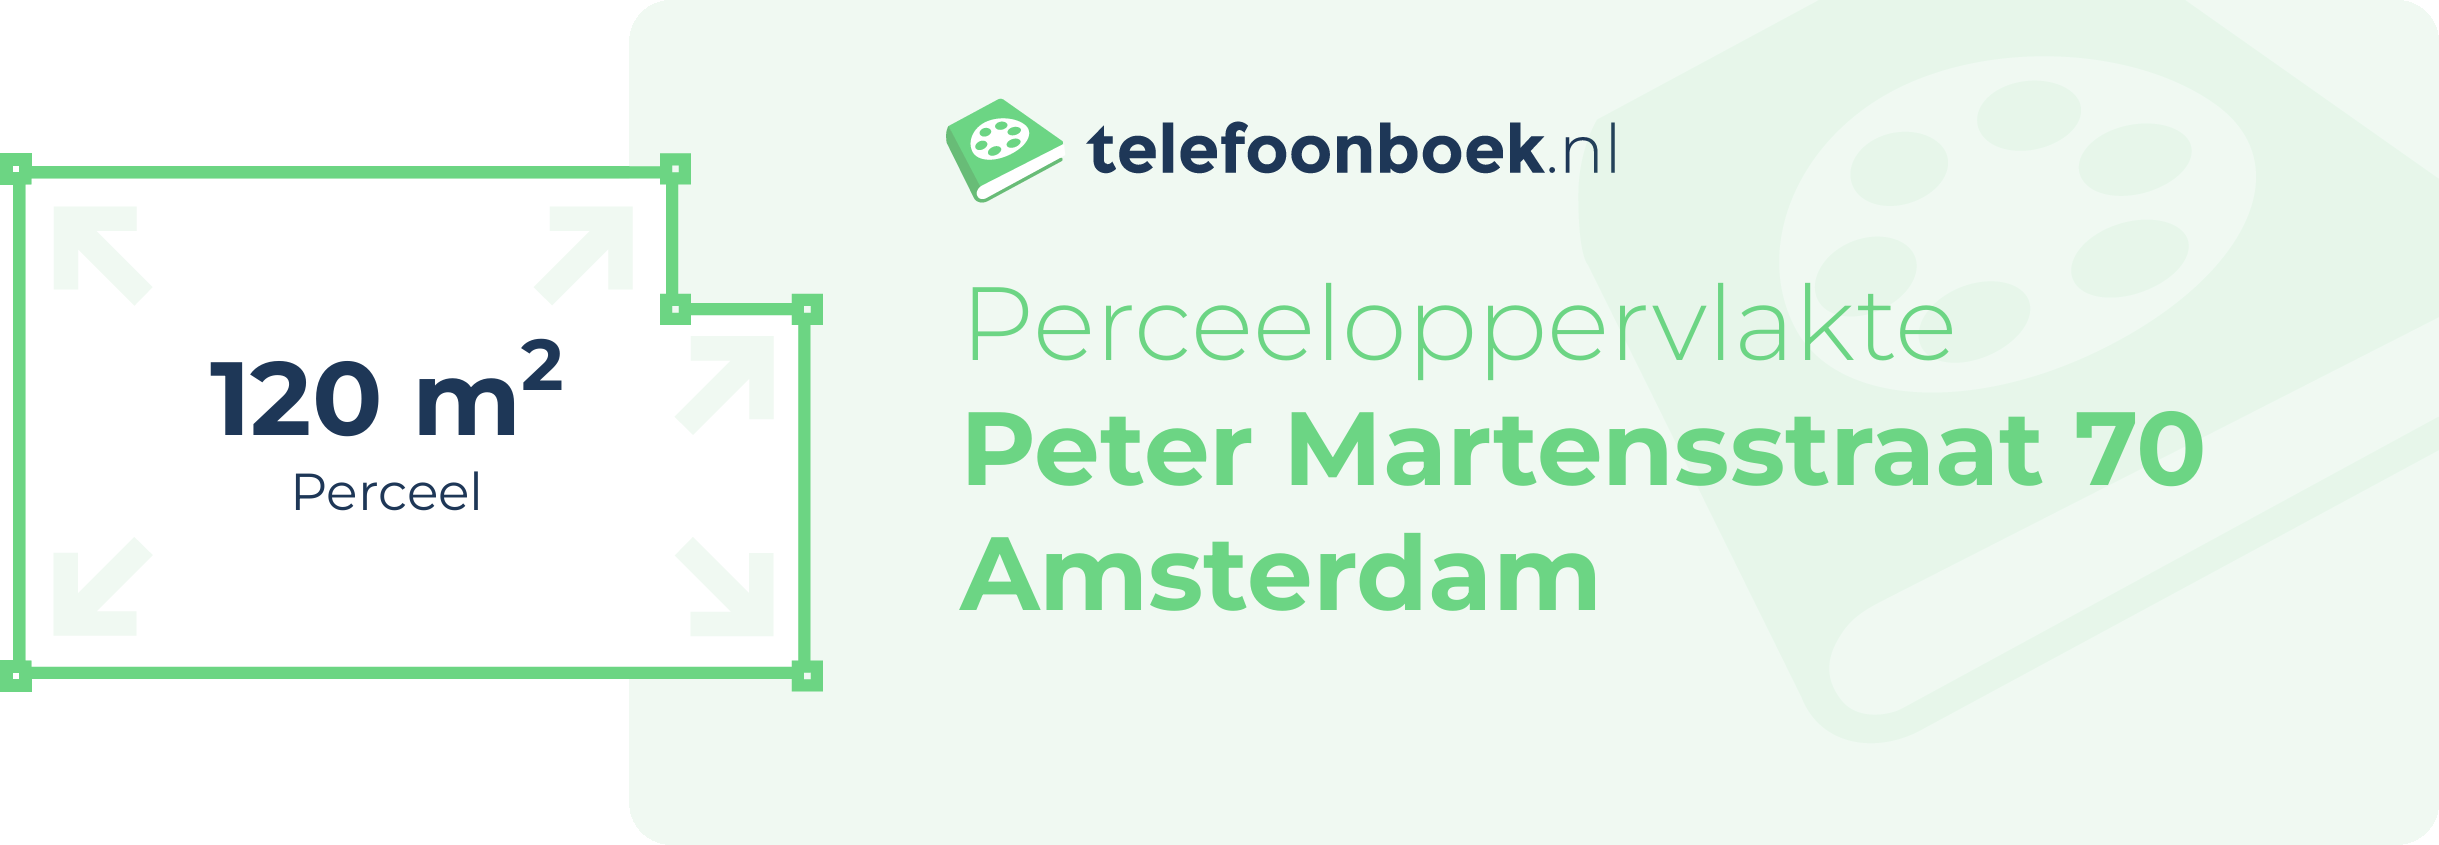 Perceeloppervlakte Peter Martensstraat 70 Amsterdam